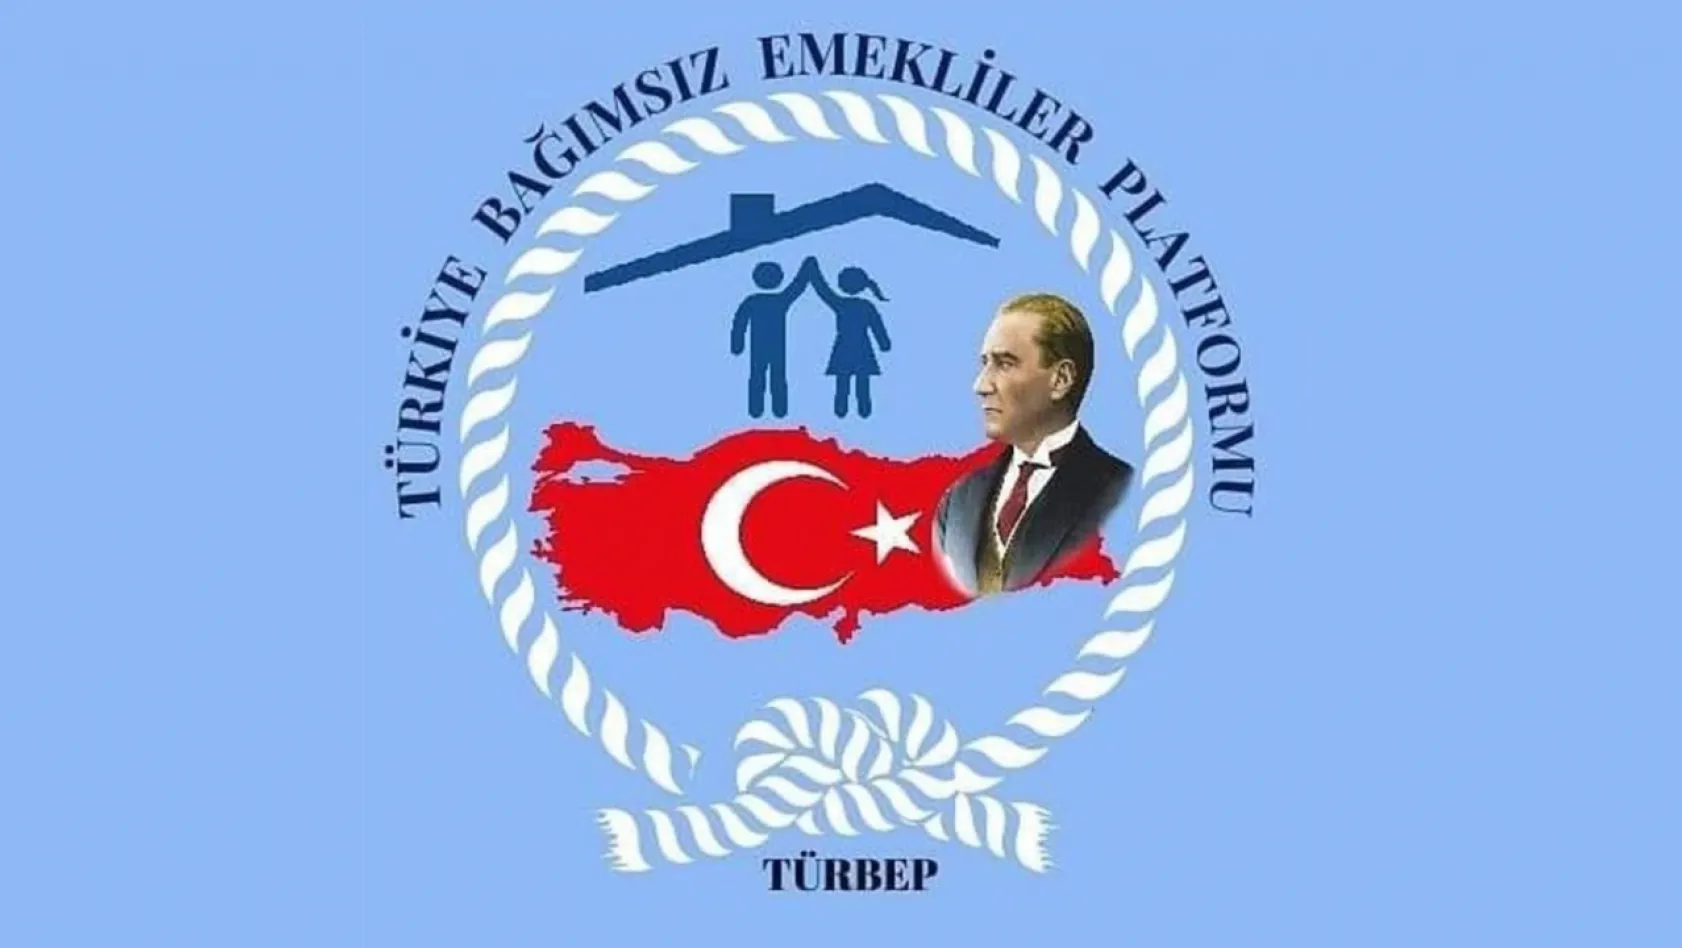 Elazığ'da TÜRBEP Emekli Platformu kuruldu